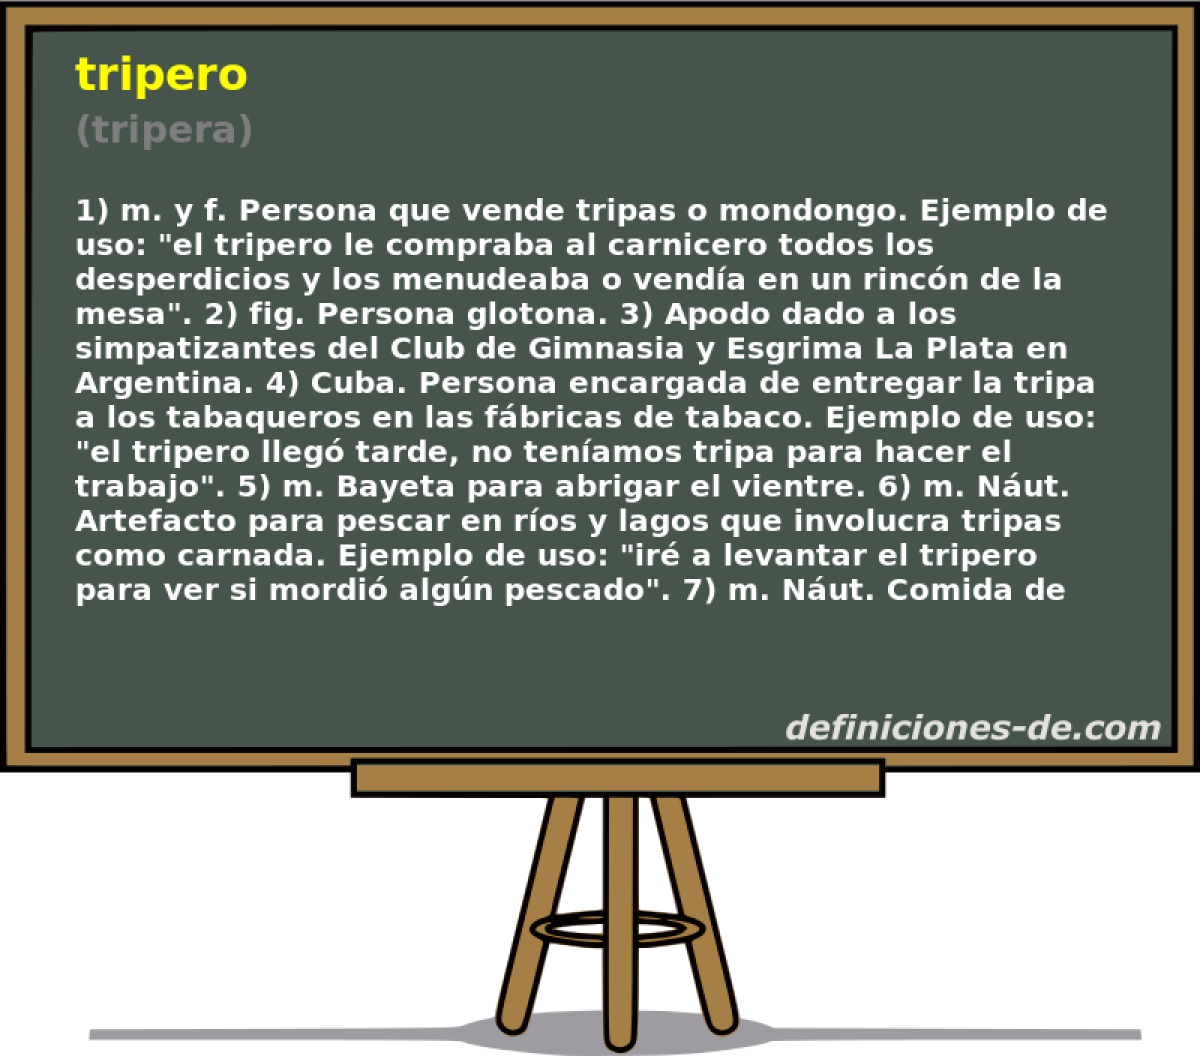 tripero (tripera)